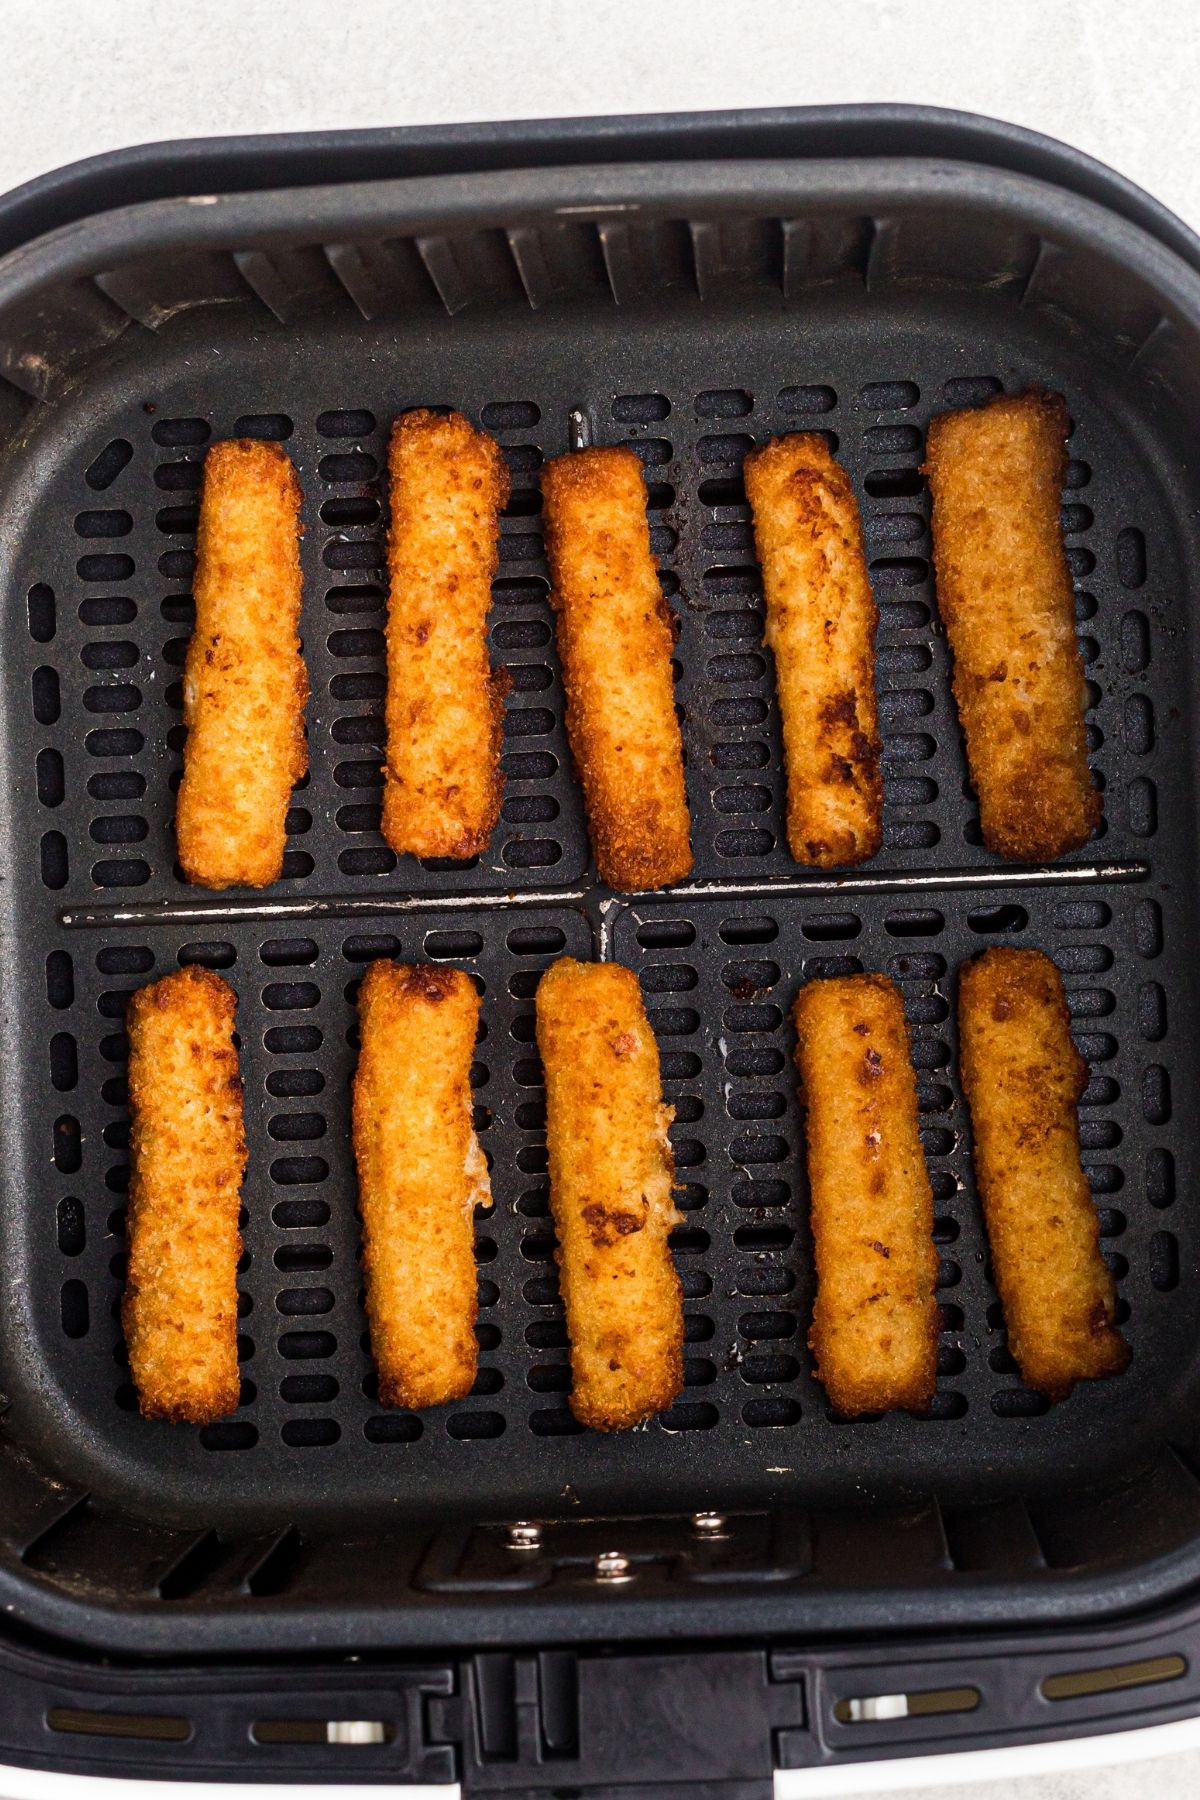 golden fried fish sticks in an air fryer basket